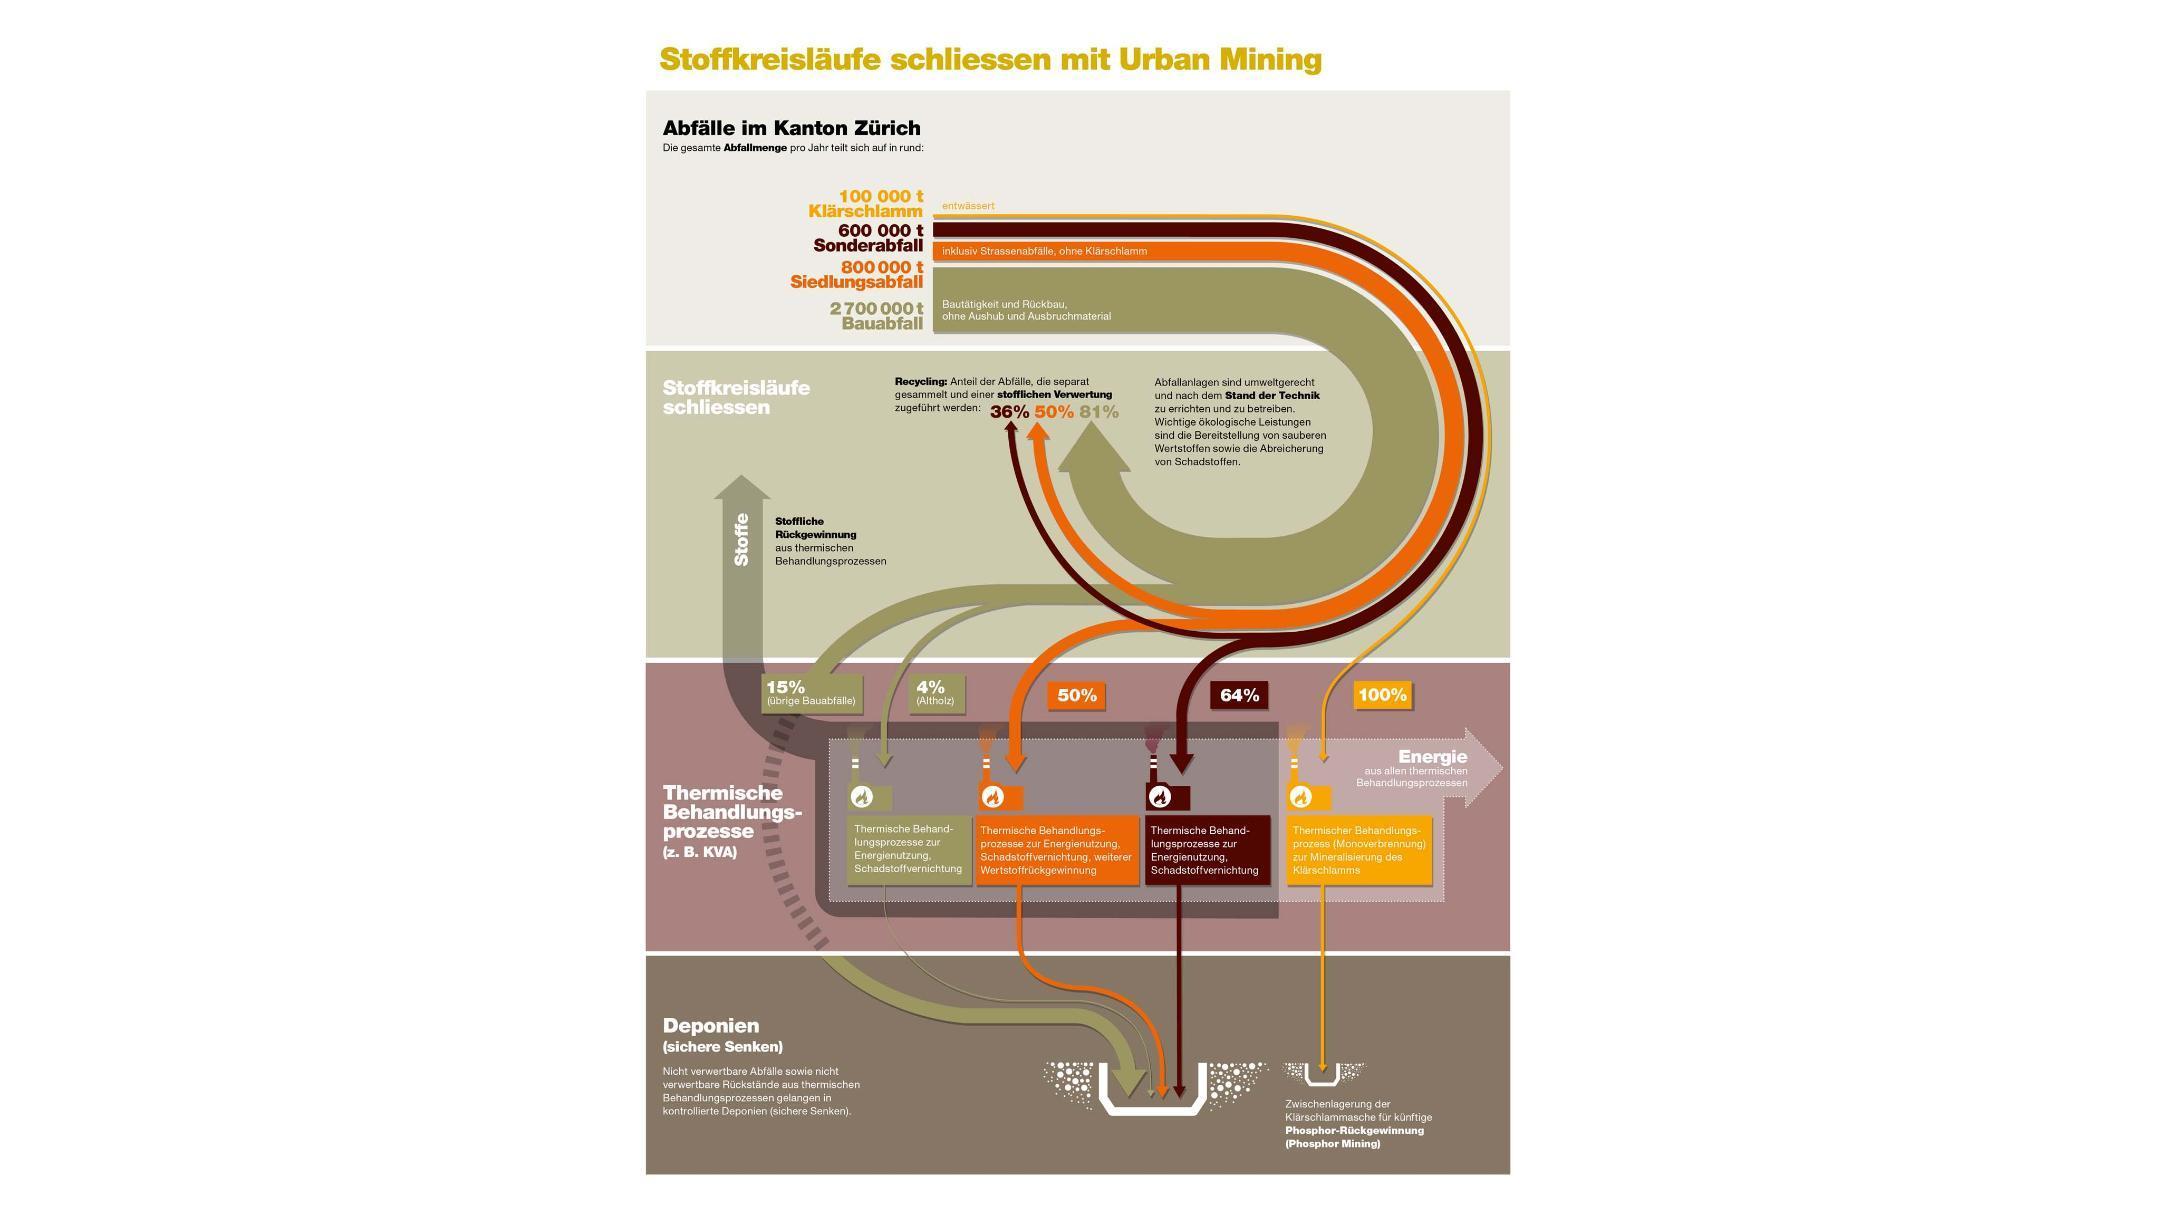 Auf der Grafik zum Denkansatz Urban Mining sind die Abfallmengen im Kanton Zürich und eine schematische Darstellung der Abfallwirtschaft mit deren Stoffkreisläufen zu sehen.